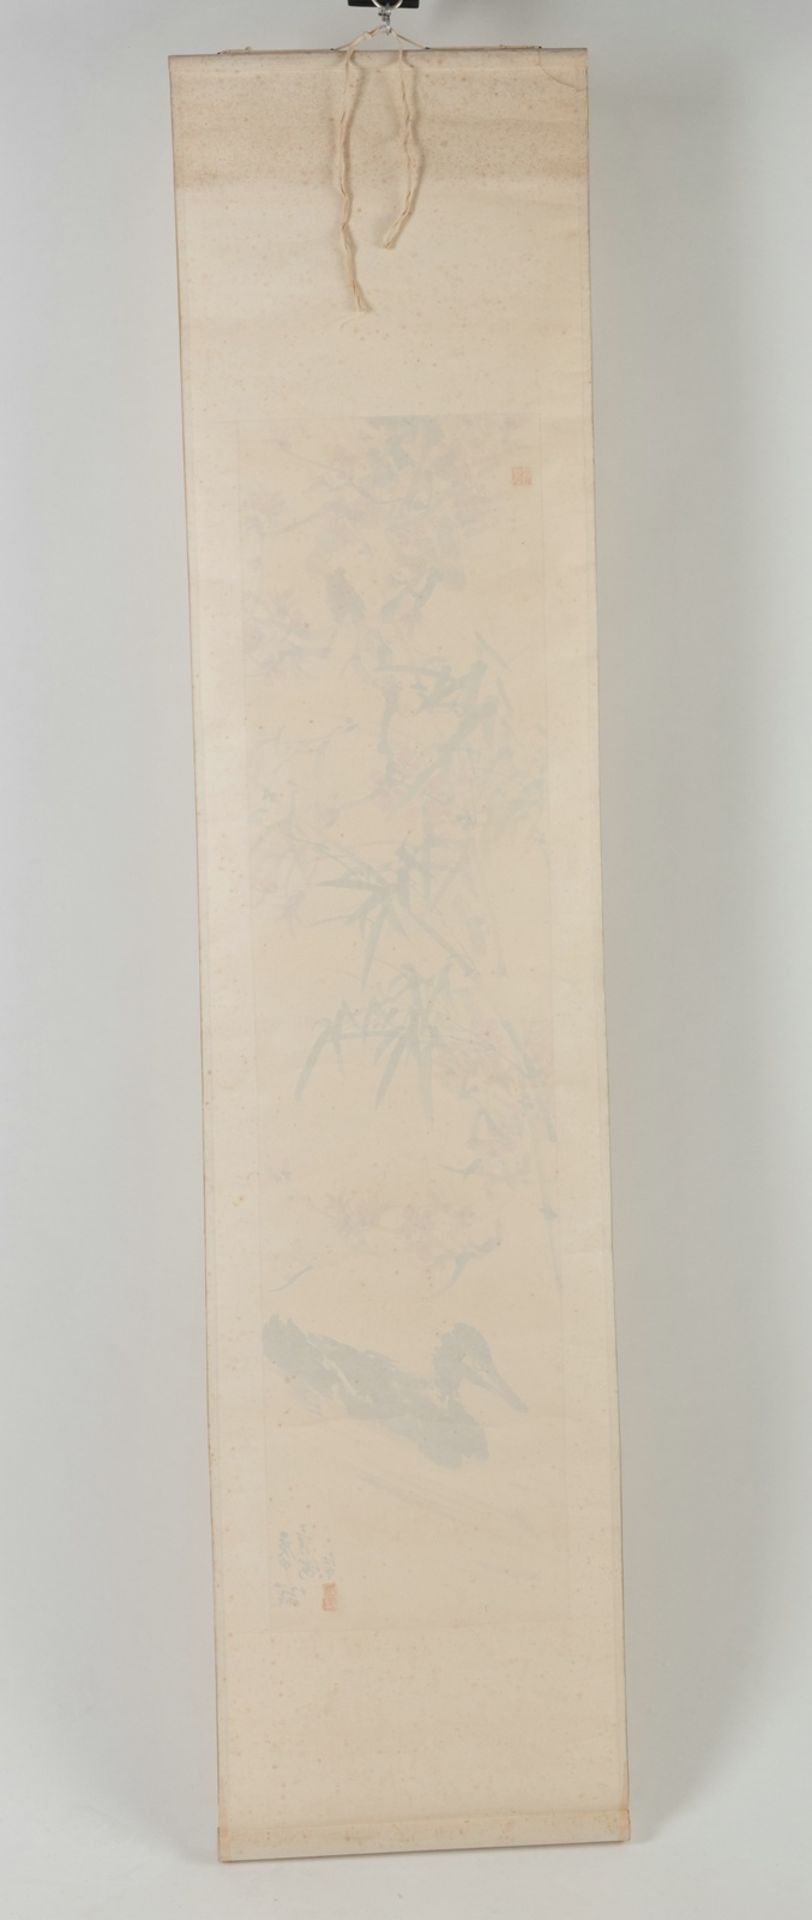 Zwei Malereien auf Papier: Kraniche über einer Kiefer bzw. Ente im Wasser unter Bambus und blühende - Bild 3 aus 10